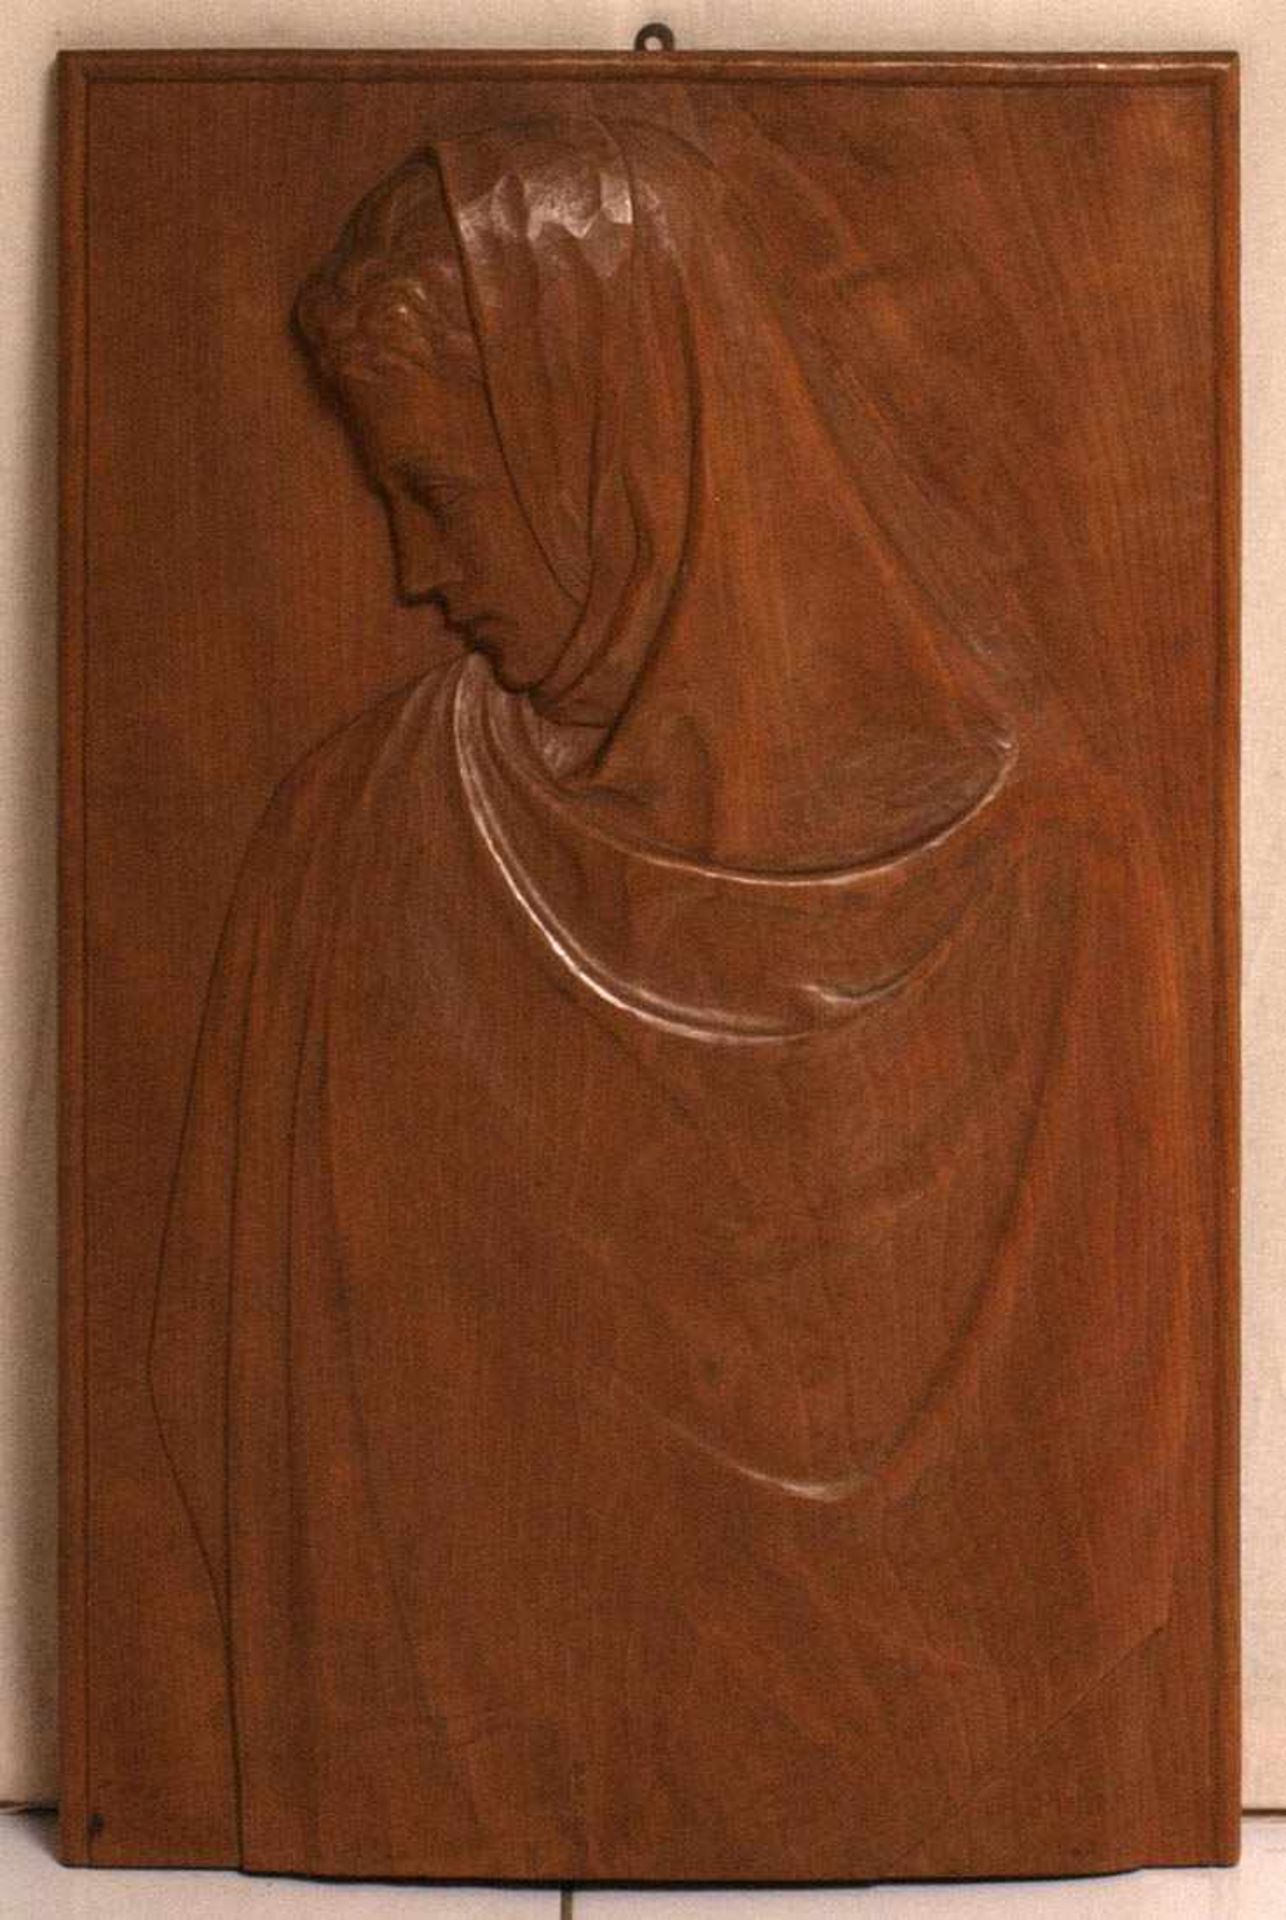 Holzrelief, um 1900 Hochrechteckige Form. Profildarstellung einer jungen Frau in wallendem Umhang.